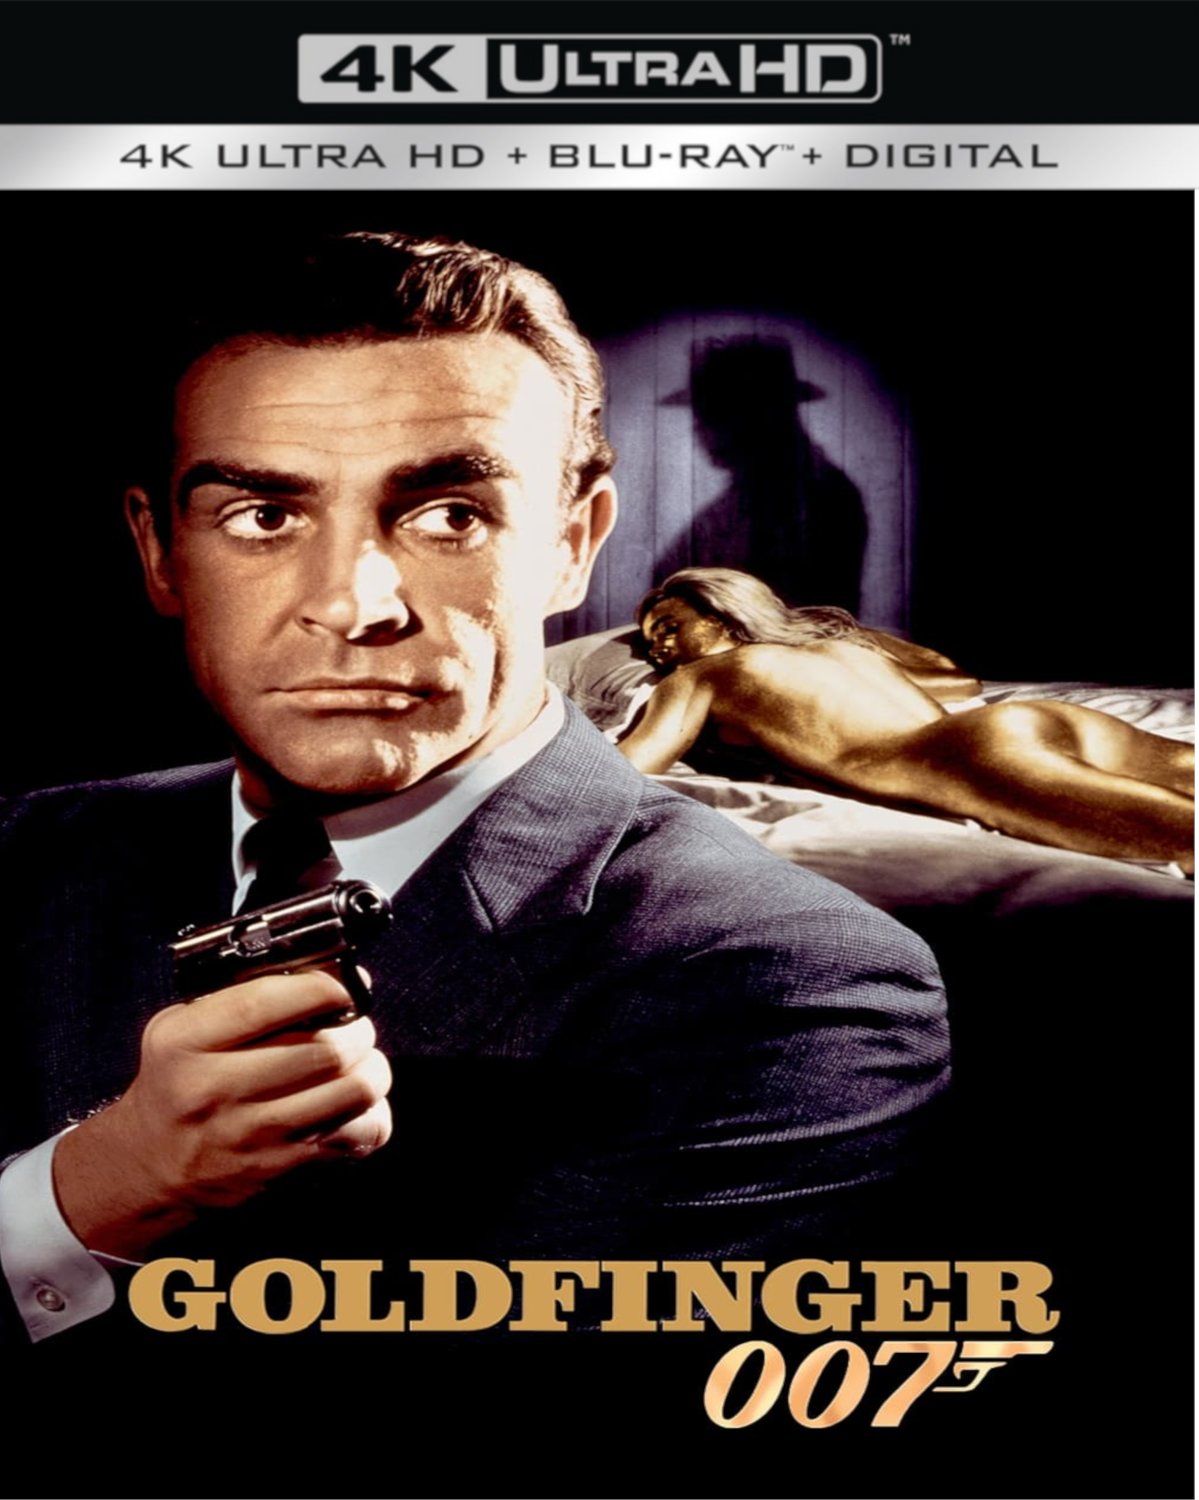 007 Alt 4K Mock Up: Goldfinger by MrYoshi1996 on DeviantArt